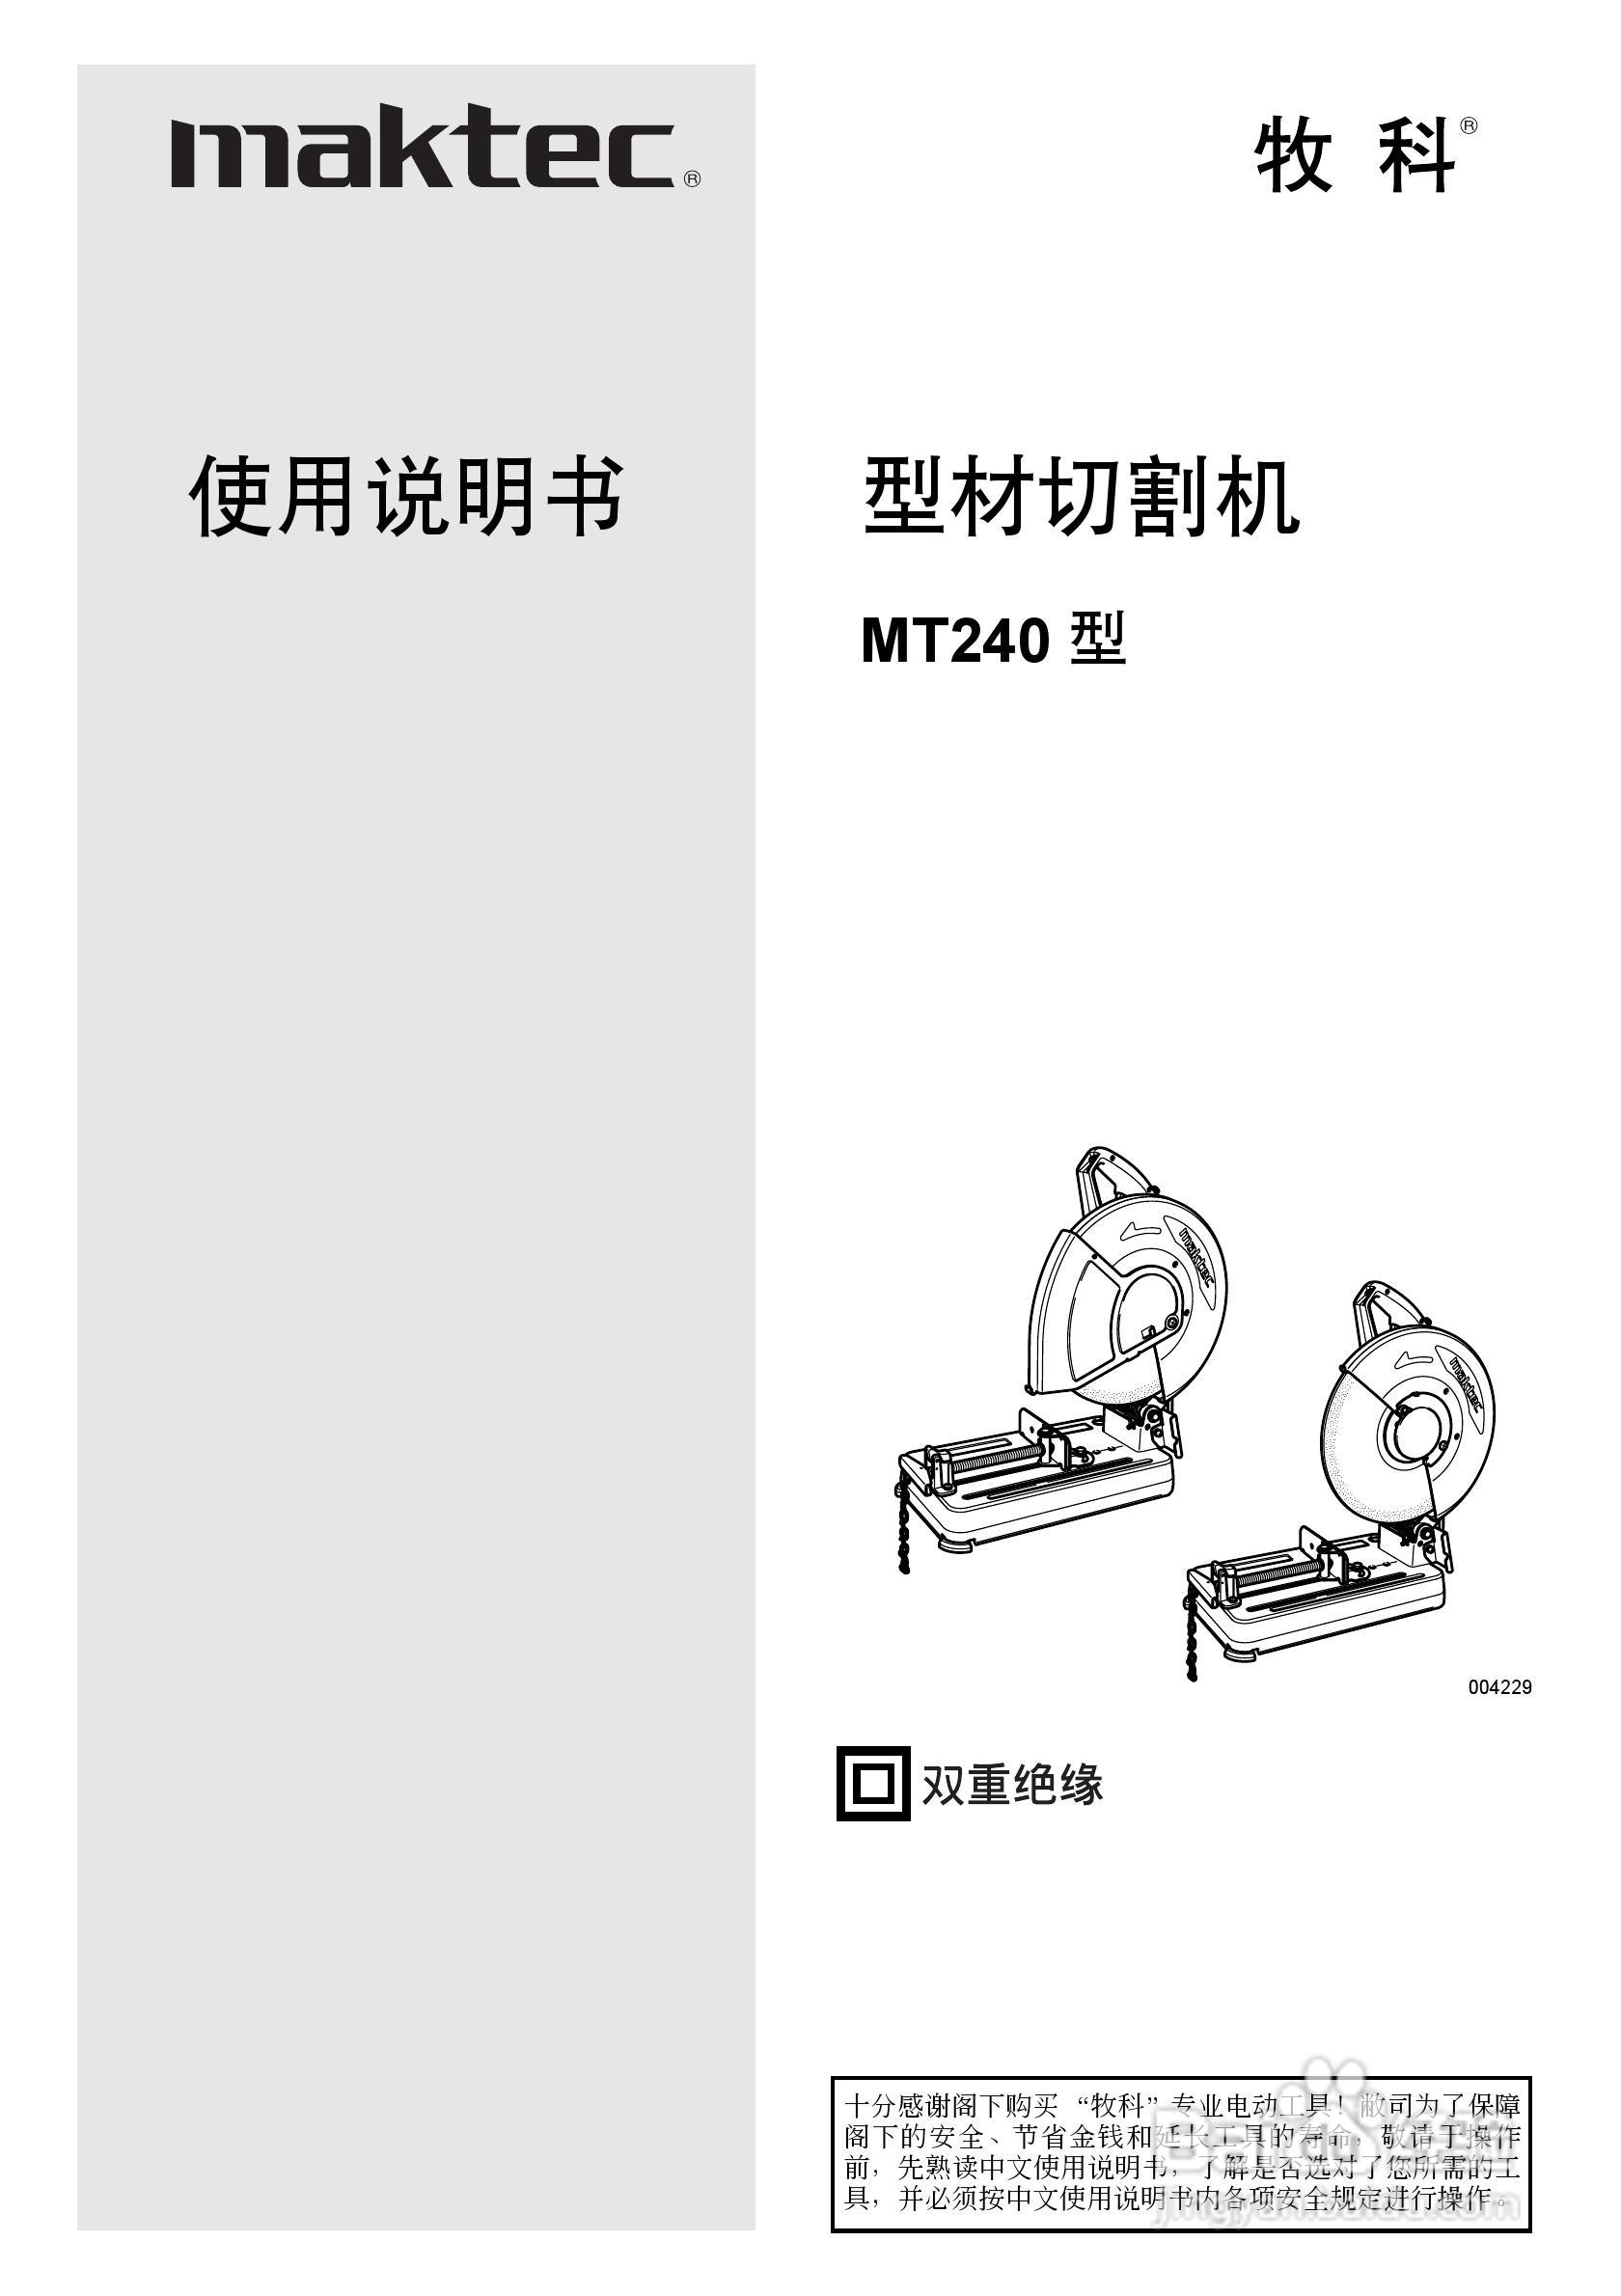 牧科mt240型材切割机使用说明书:[1]